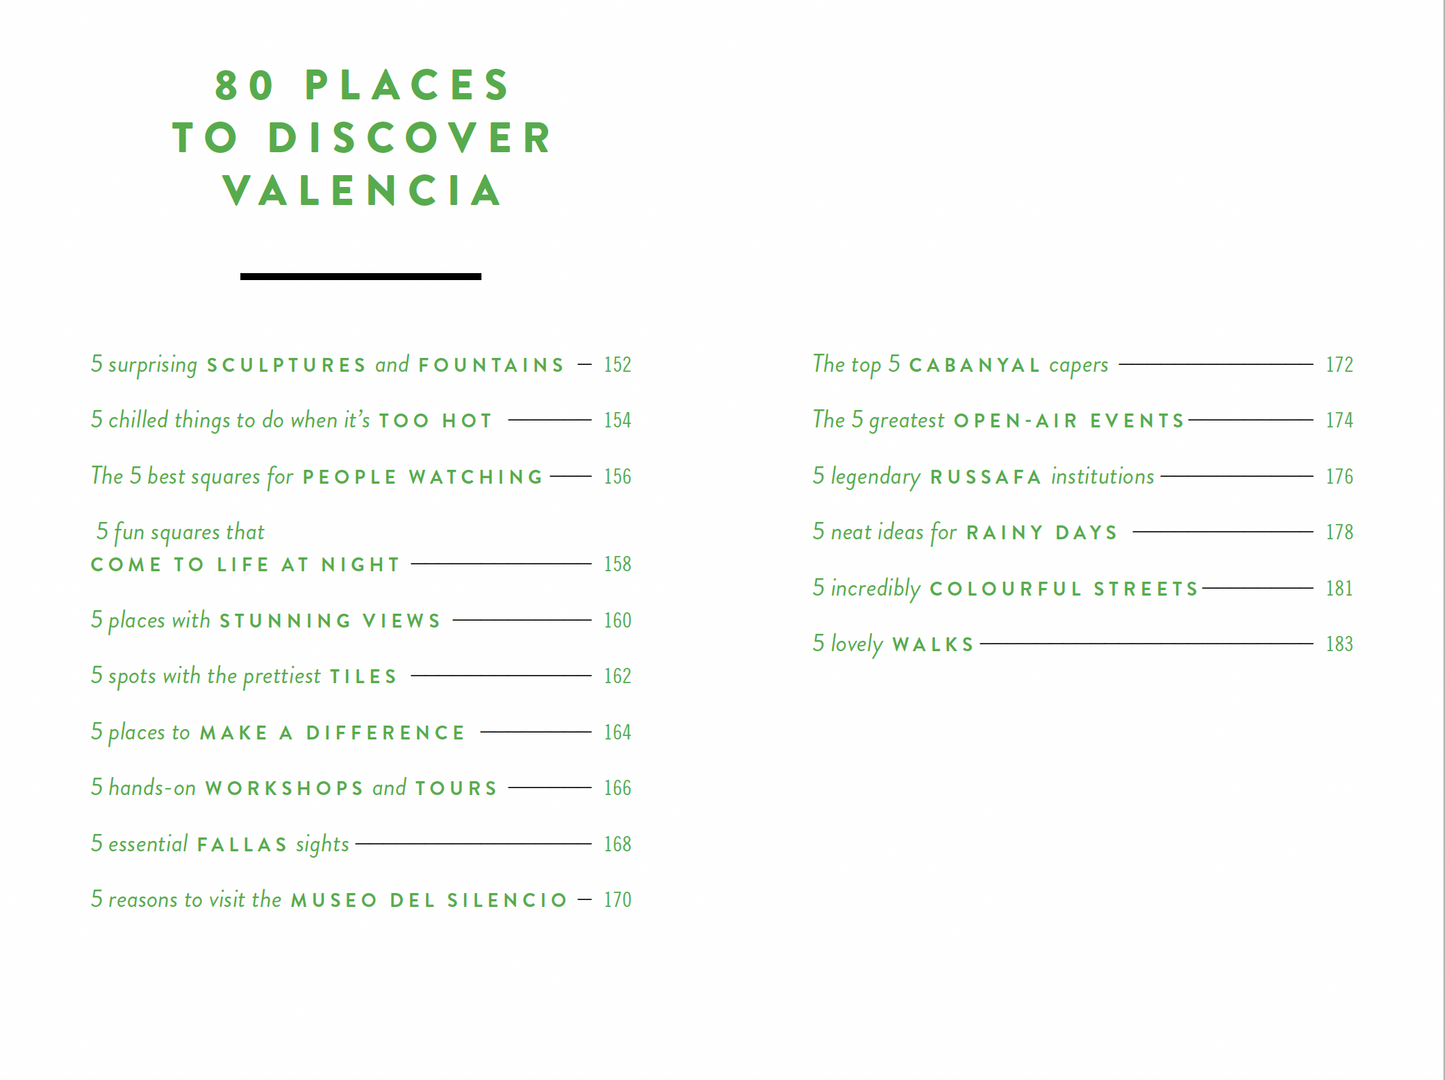 The 500 Hidden Secrets of Valencia